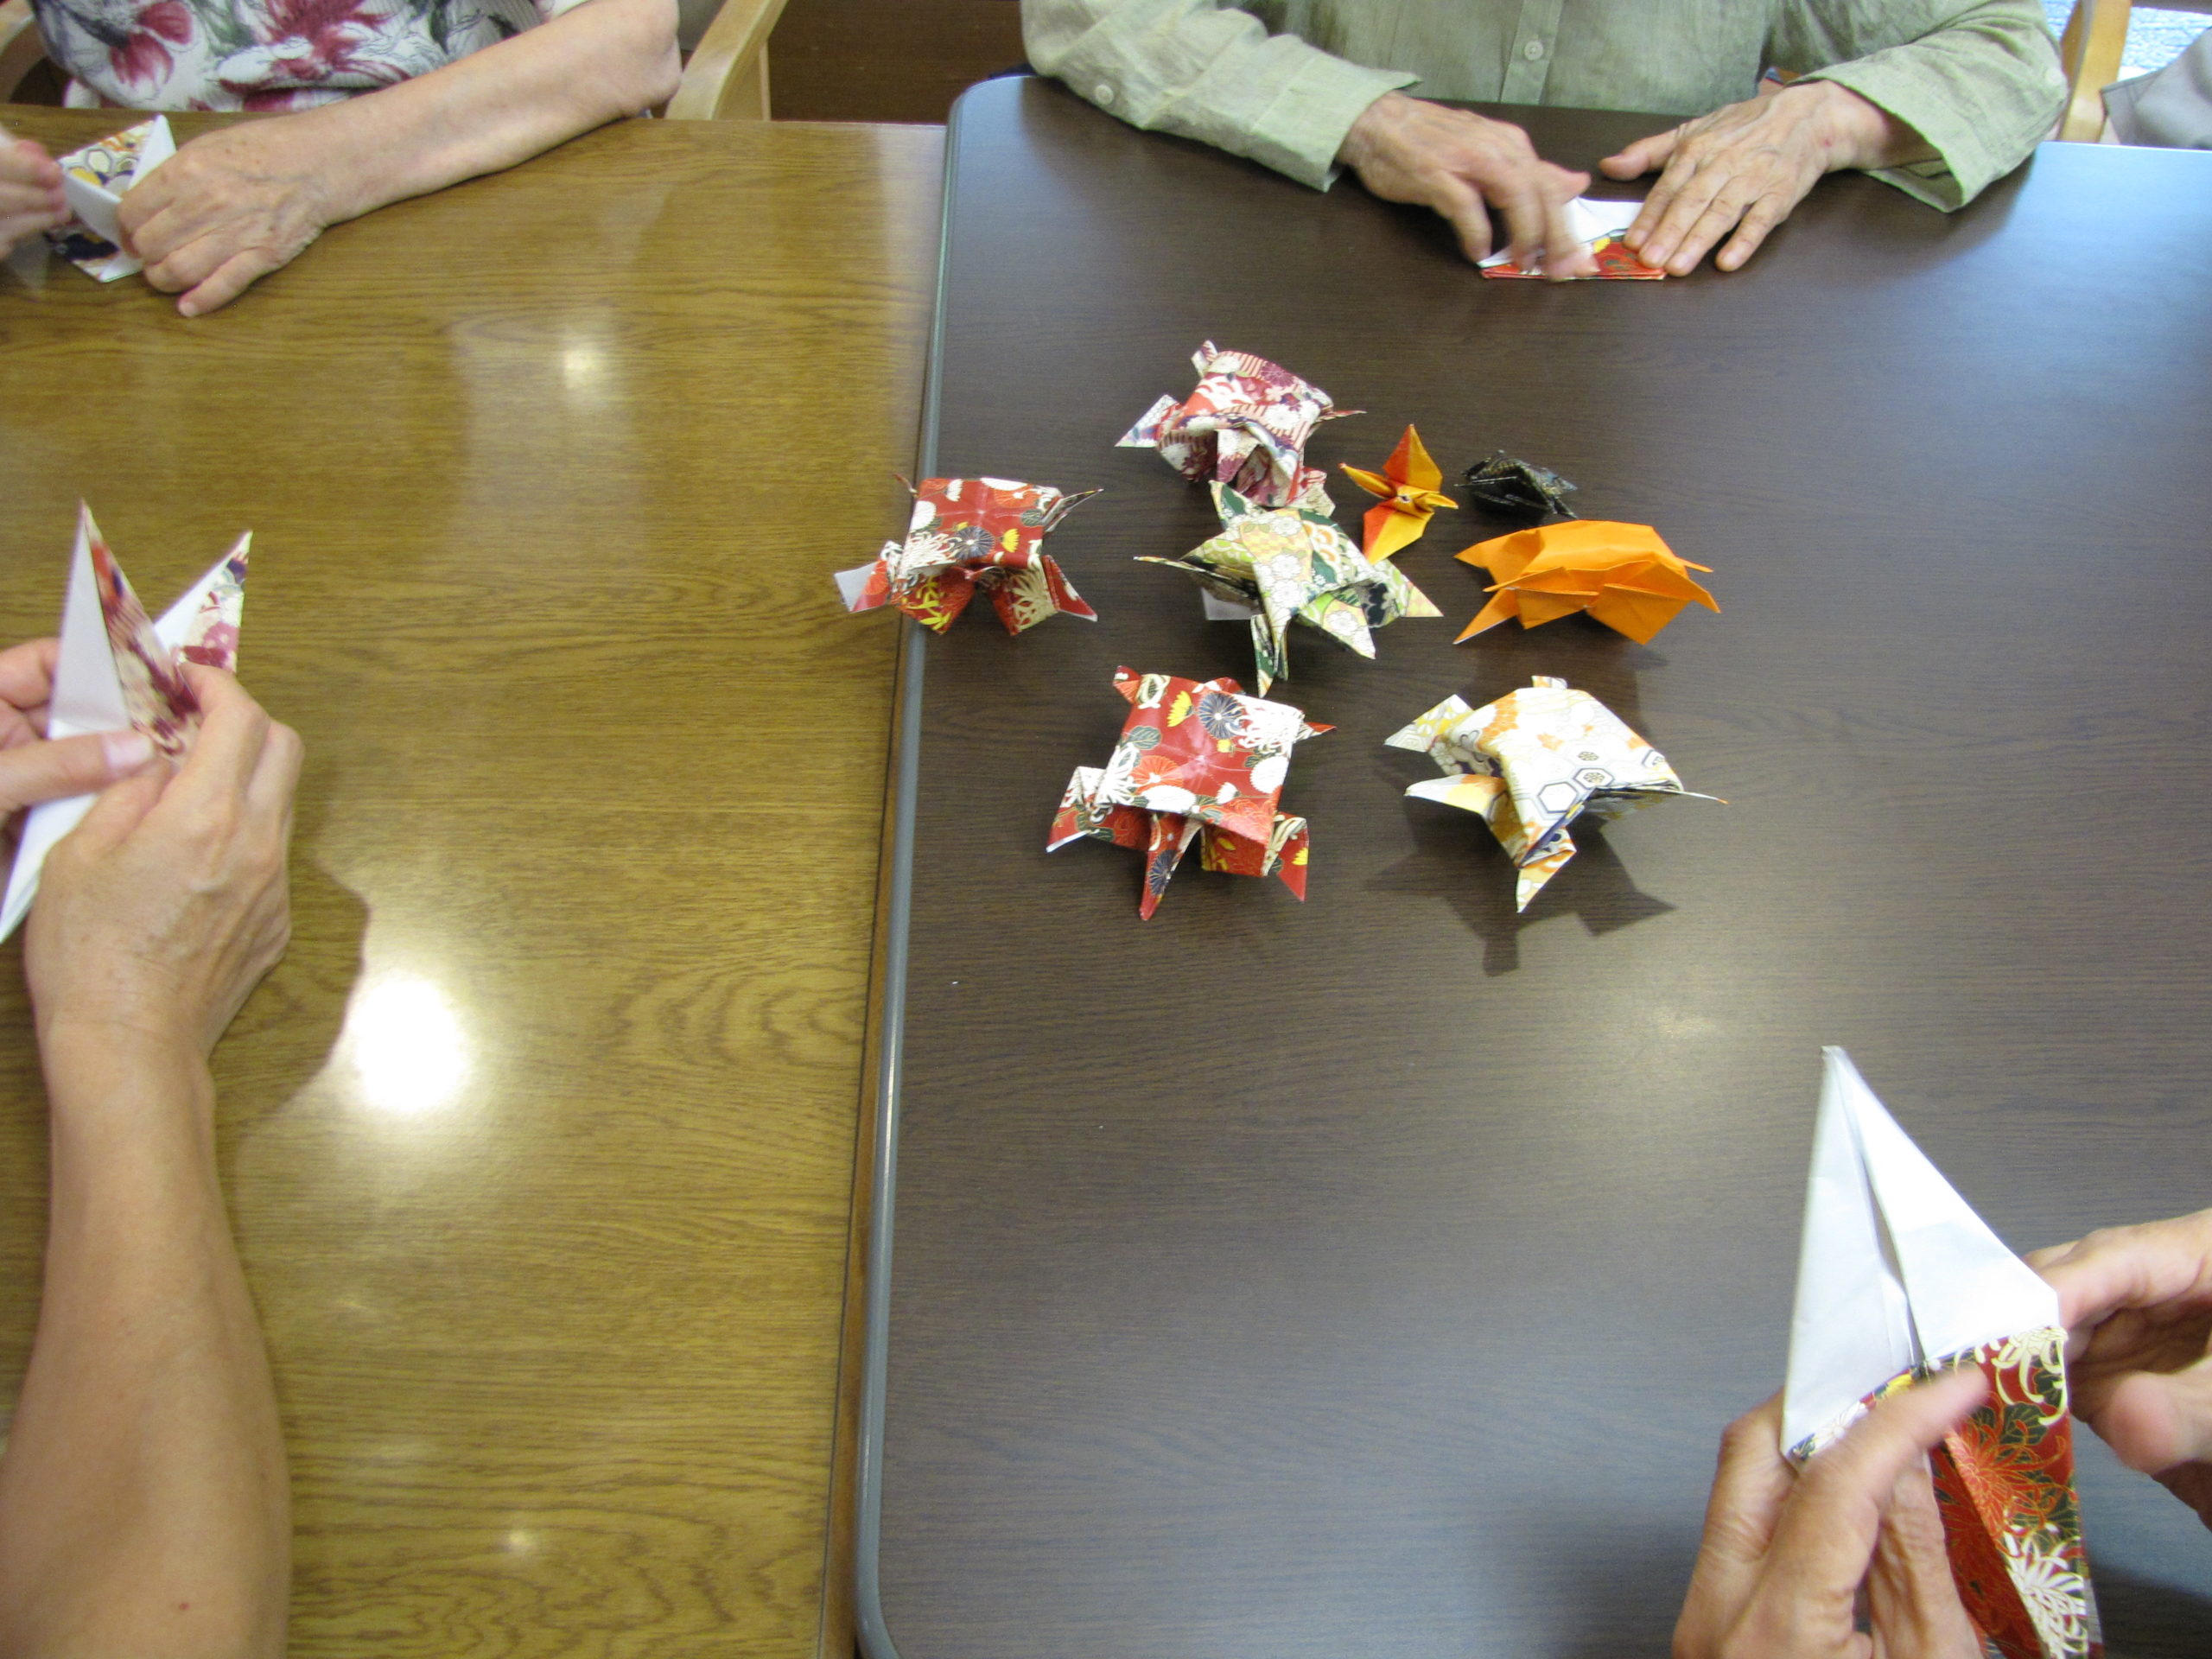 【練馬KG】デイサービスのプログラム、9月の折り紙は『鶴と亀』を作成